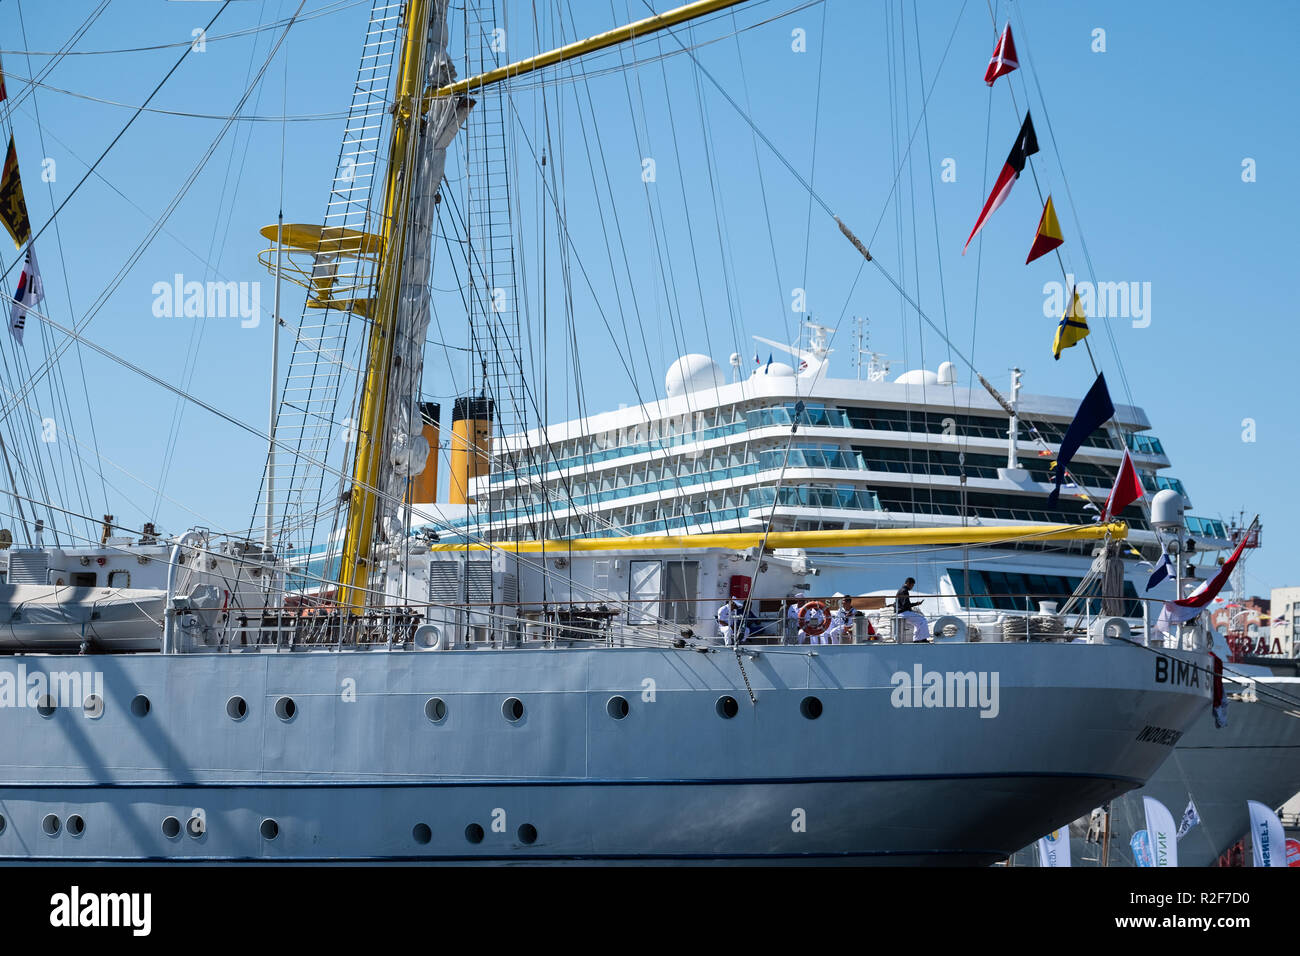 Wladiwostok, Russland - 9. September 2018: Ocean Liner Costa Romantica und Segelschiff Bima Suci im Hafen von Wladiwostok. Aussicht an Bord des Schiffes. Stockfoto